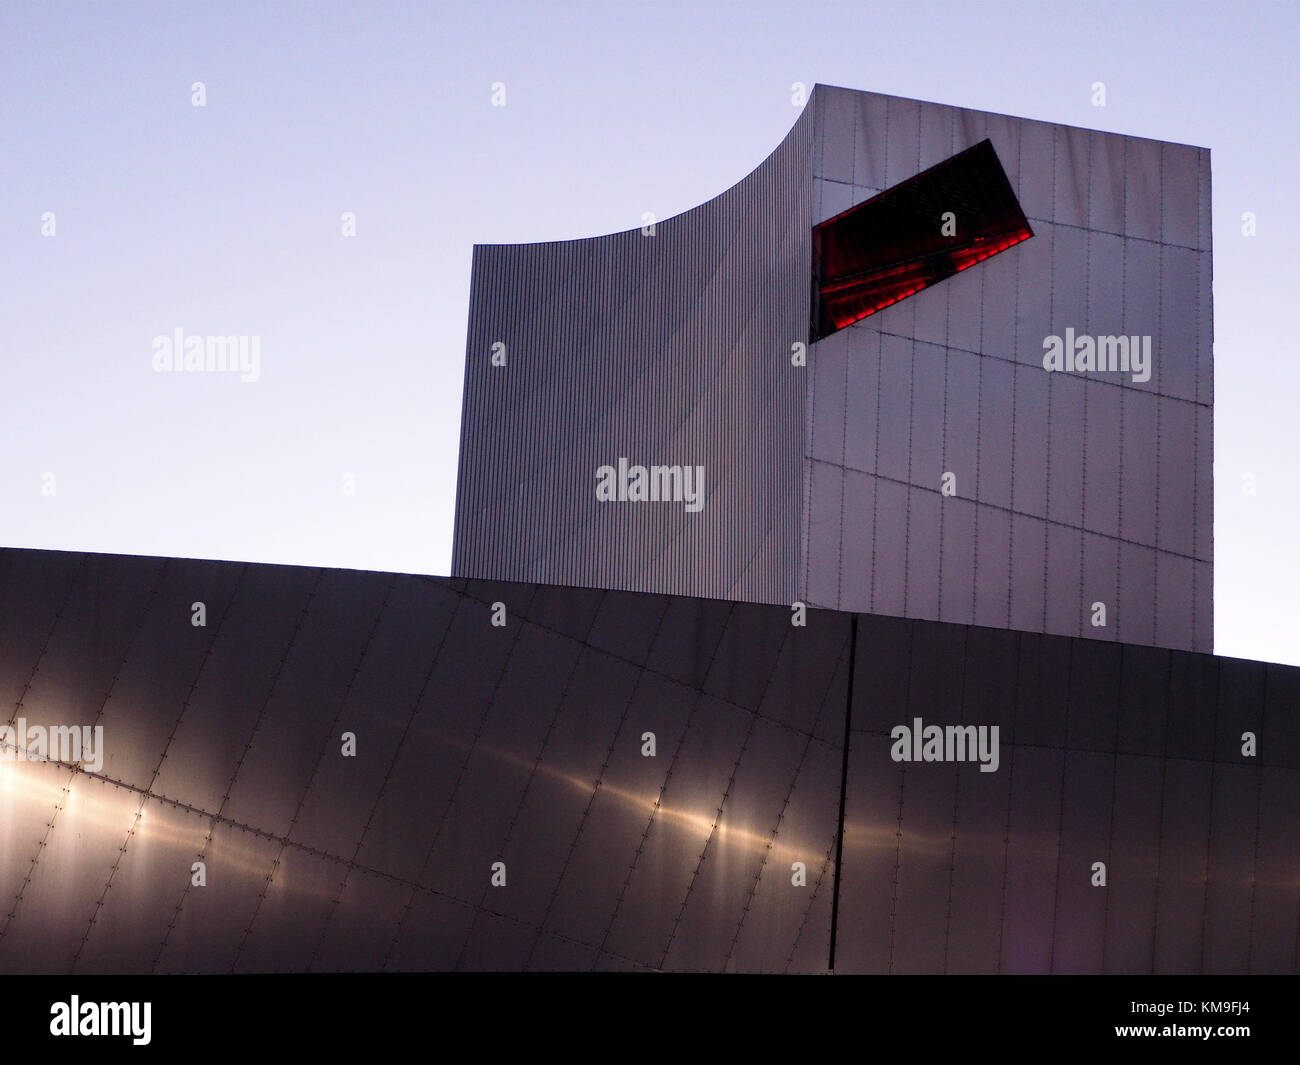 Vision du metal futuriste structure de l'Imperial War Museum Salford Quays, Manchester, UK, comme le crépuscule améliore la structure illuminée Banque D'Images